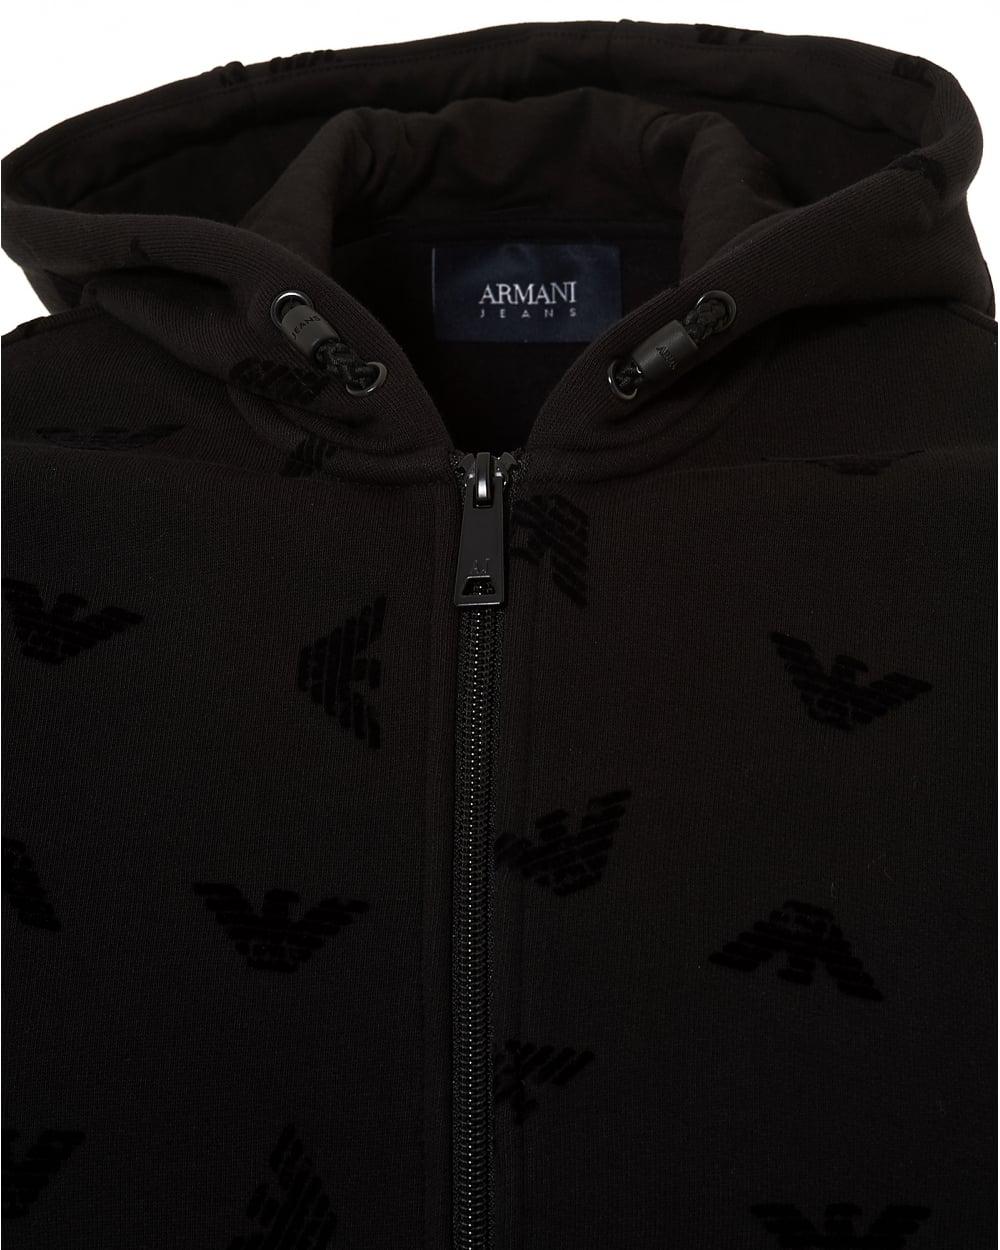 armani flocked eagle hoodie